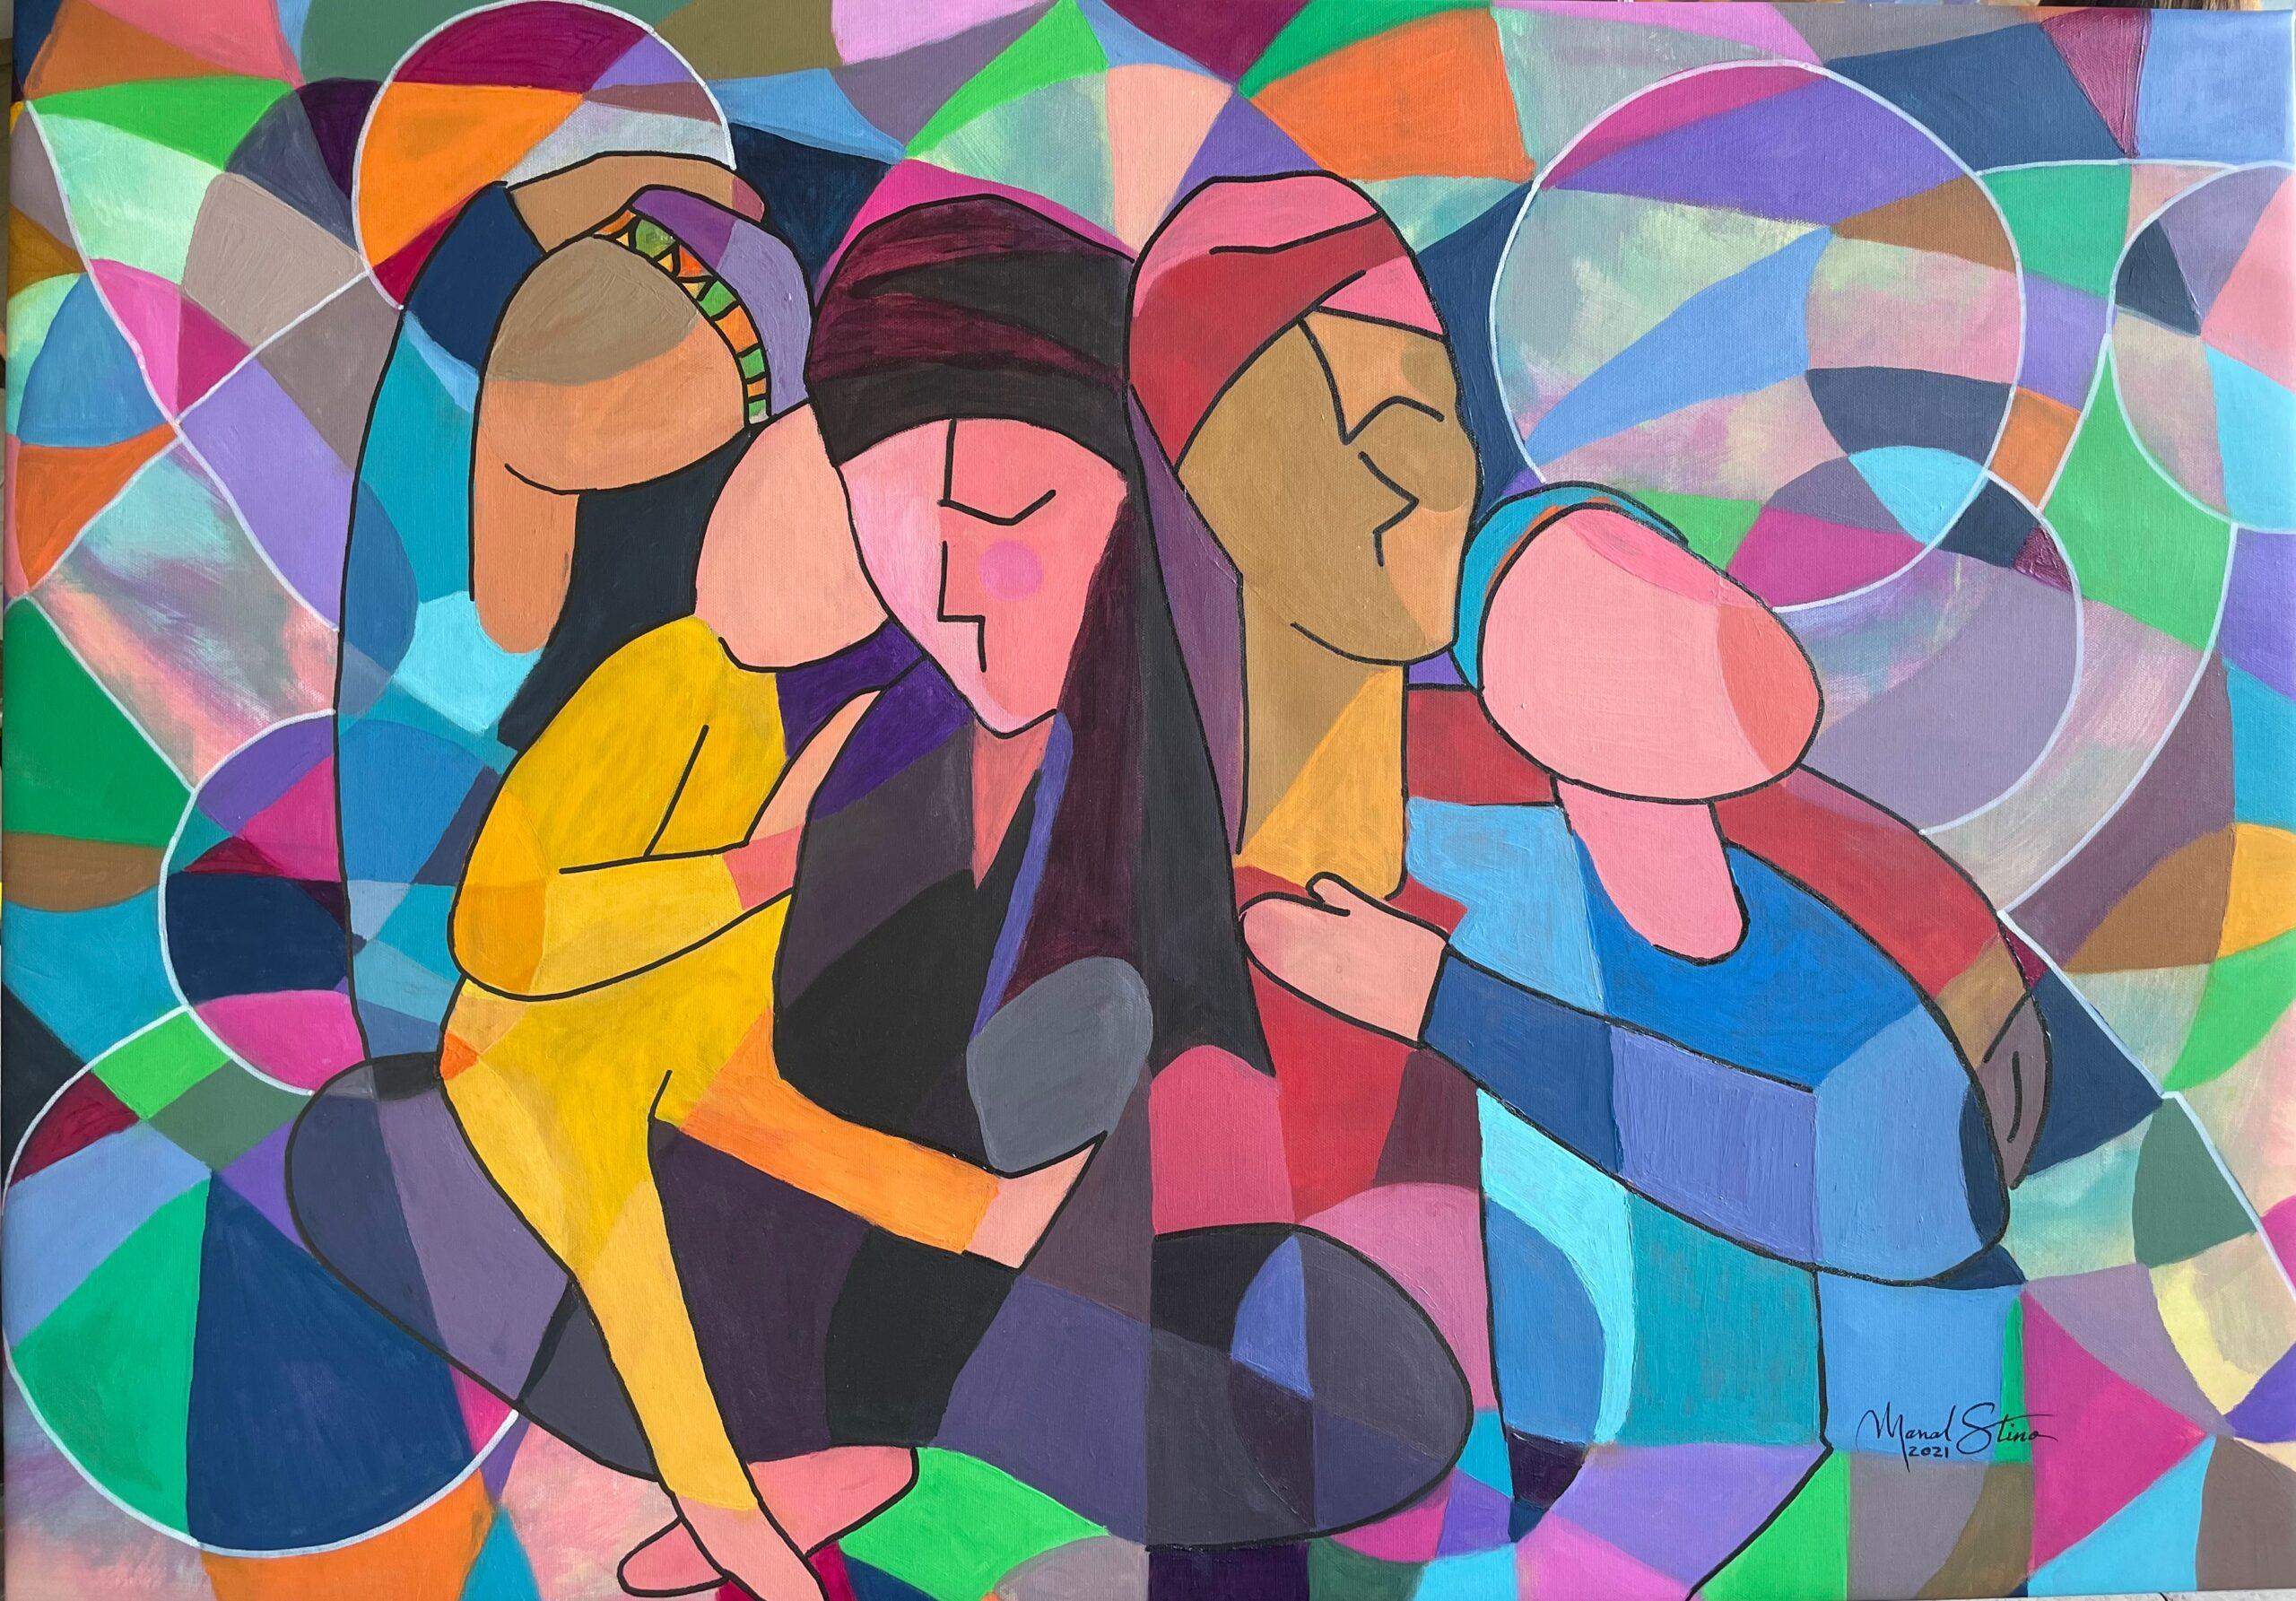 La Familia von Manal Stino – Painting von Unknown